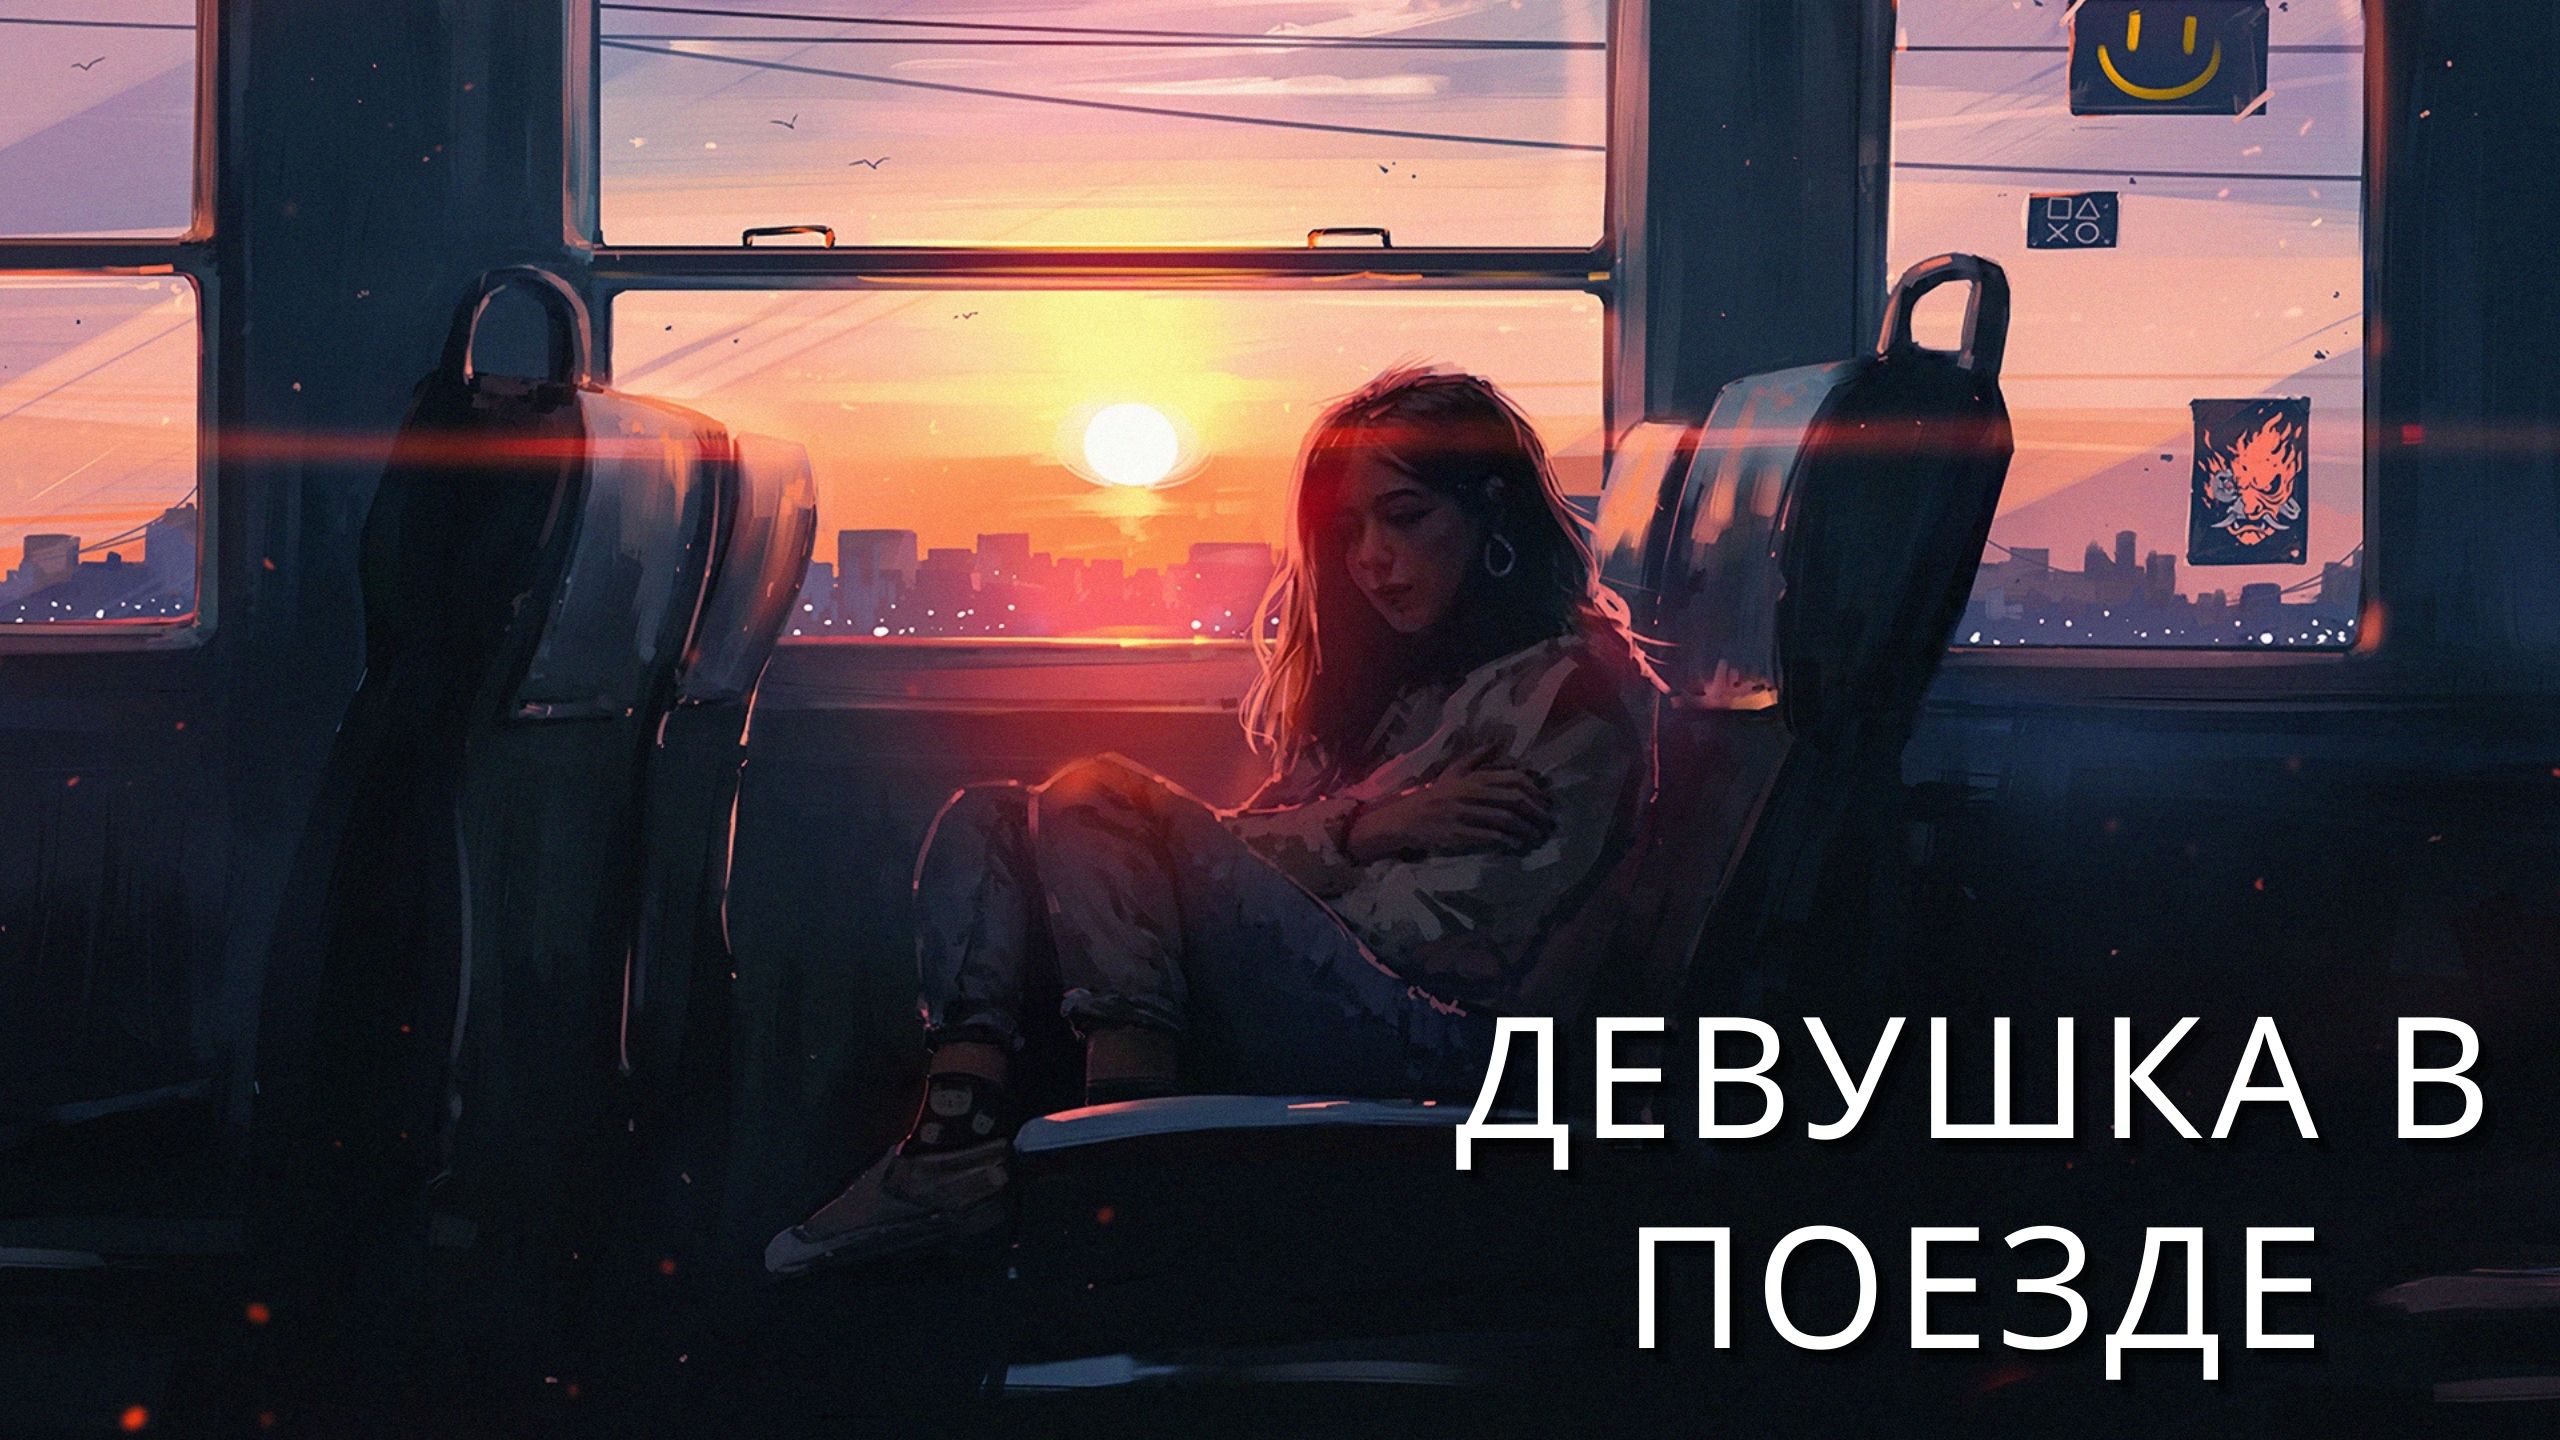 Девушка в поезде - Глубокий сон - Лучшие Целебные Звуки для Целебного сна - Расслабляющая музыка